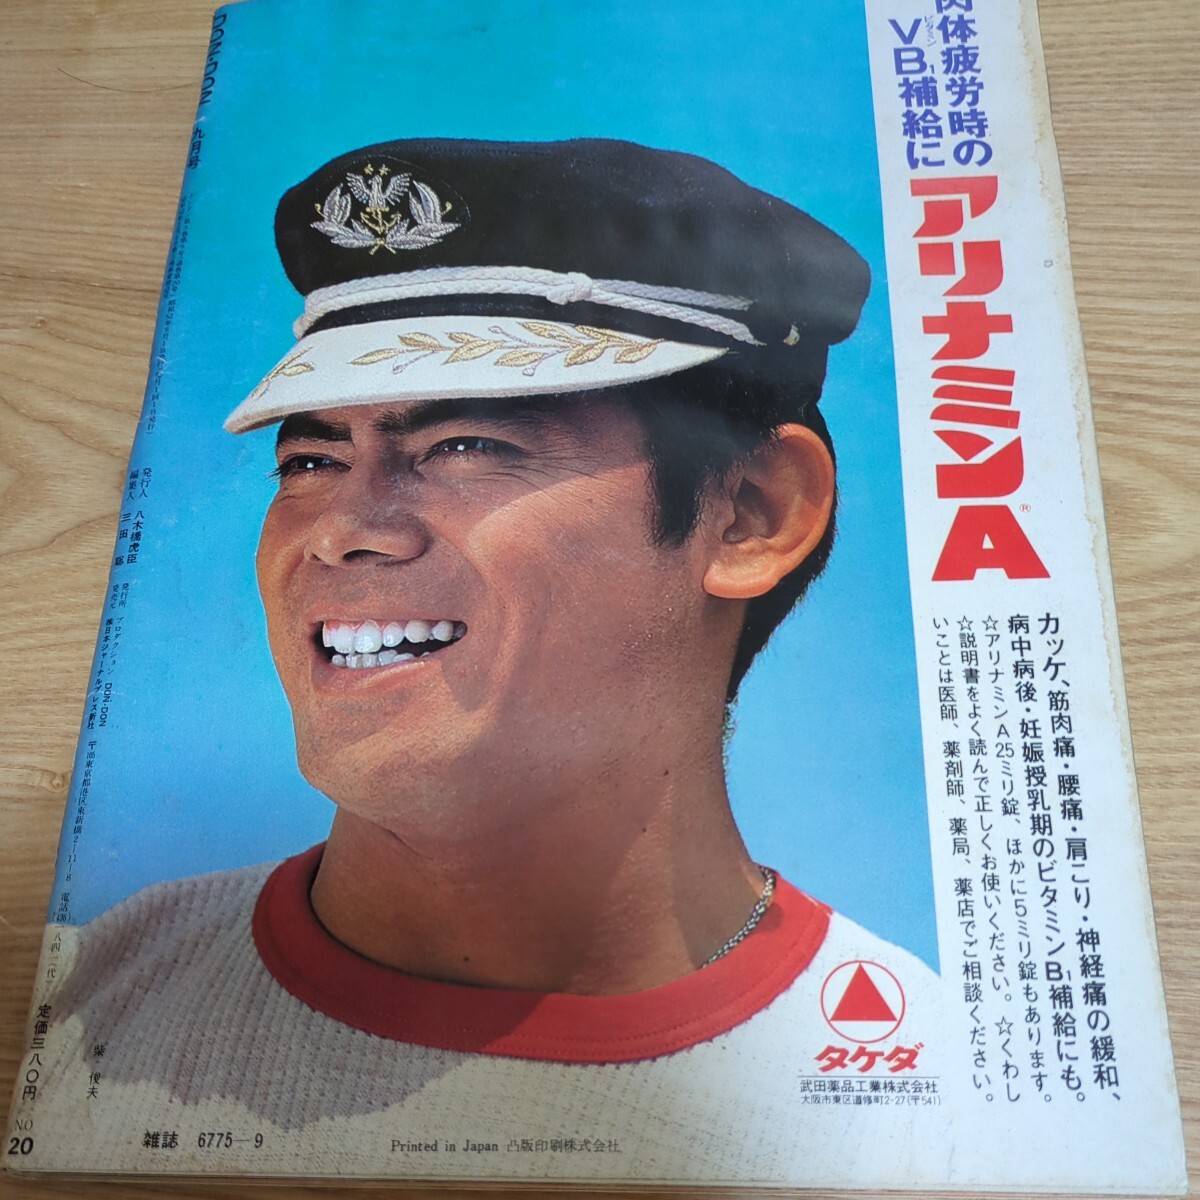 DONDON 1977 год Okada Nana булавка nap постер иметь рука .... бикини лето глаз .. бикини вода дерево ...*... кошка иллюзия . гэкига короткий сборник Showa 52 год 